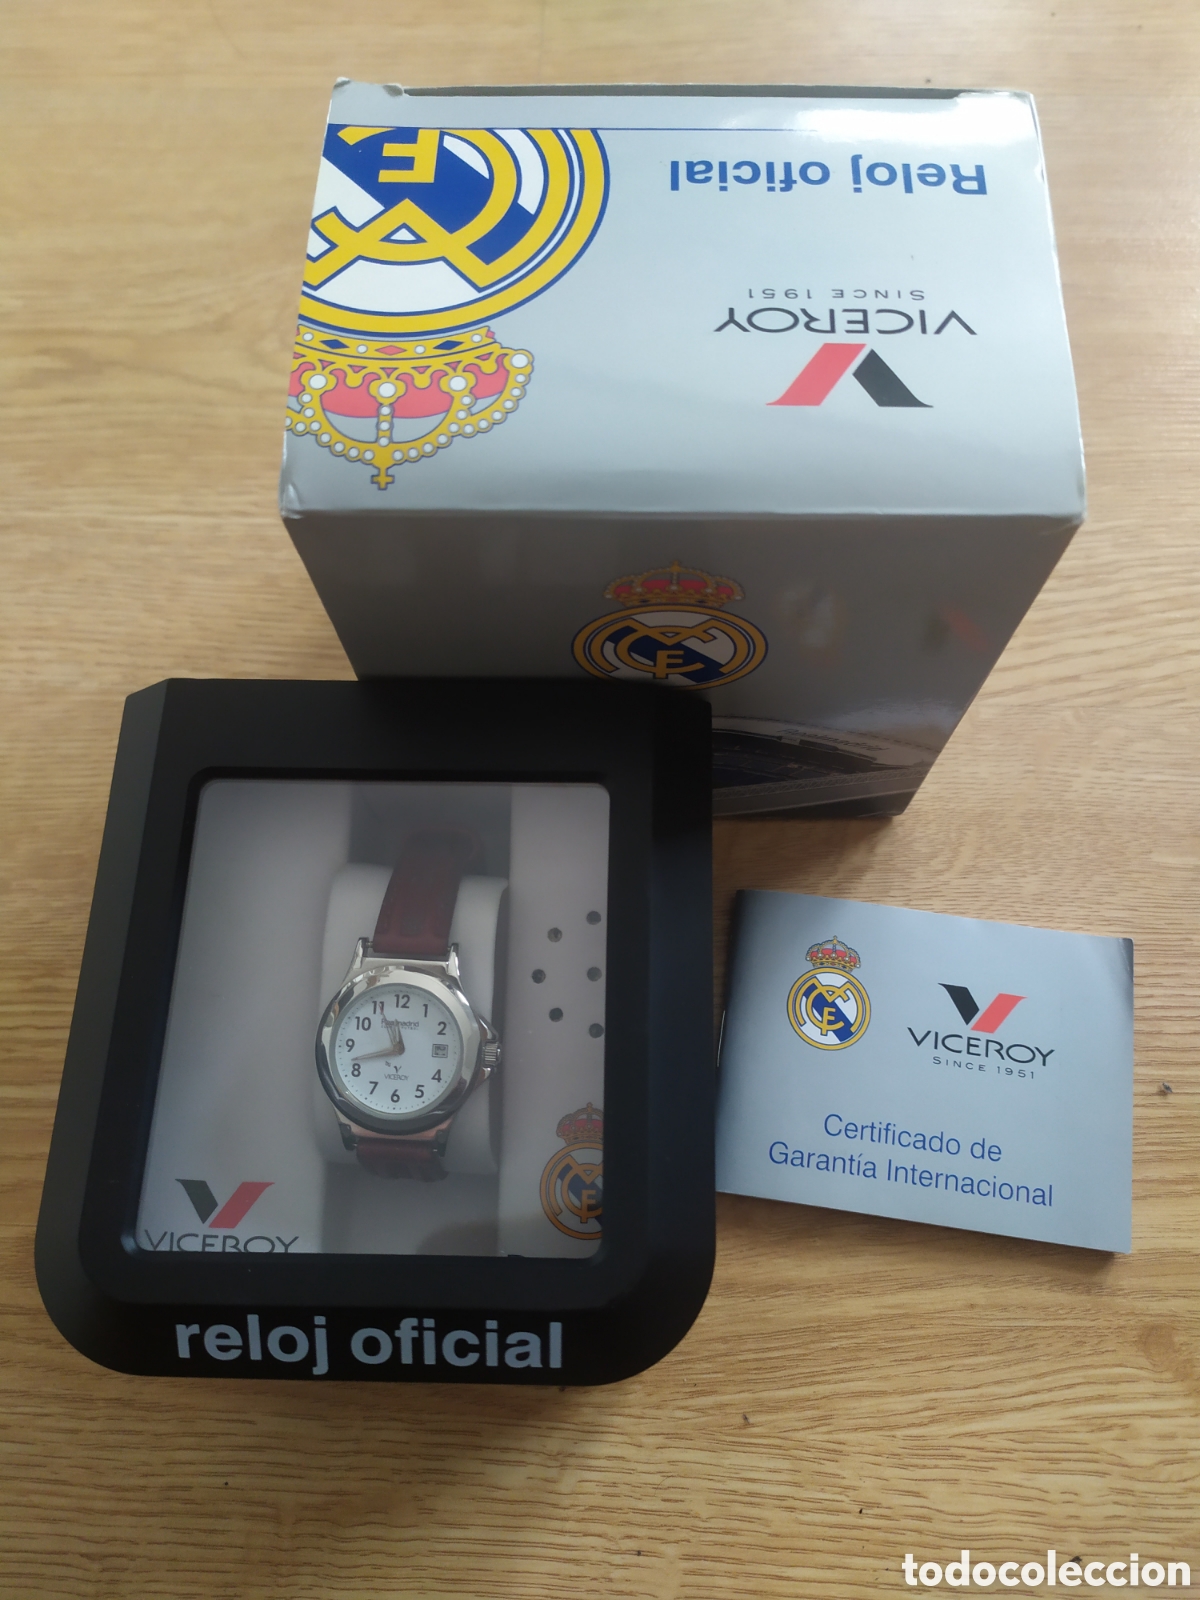 Reloj niño marca Viceroy, oficial Real Madrid de segunda mano por 15 EUR en  Olías del Rey en WALLAPOP